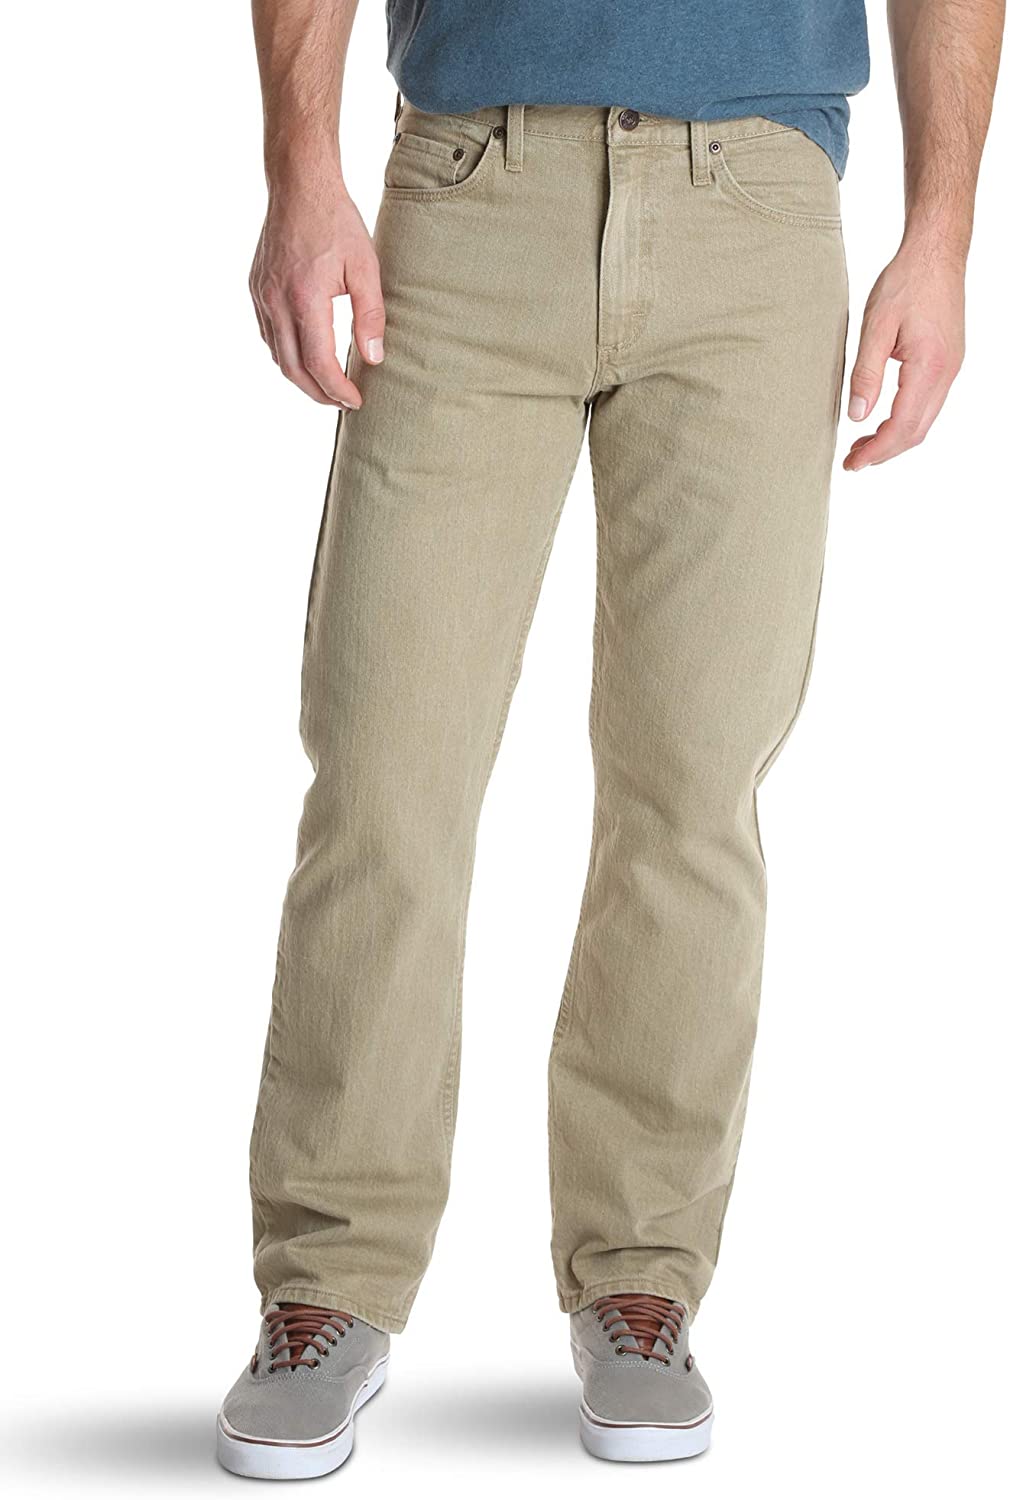 Wrangler Men's Classic 5-Pocket Relaxed Fit Flex Jean | eBay